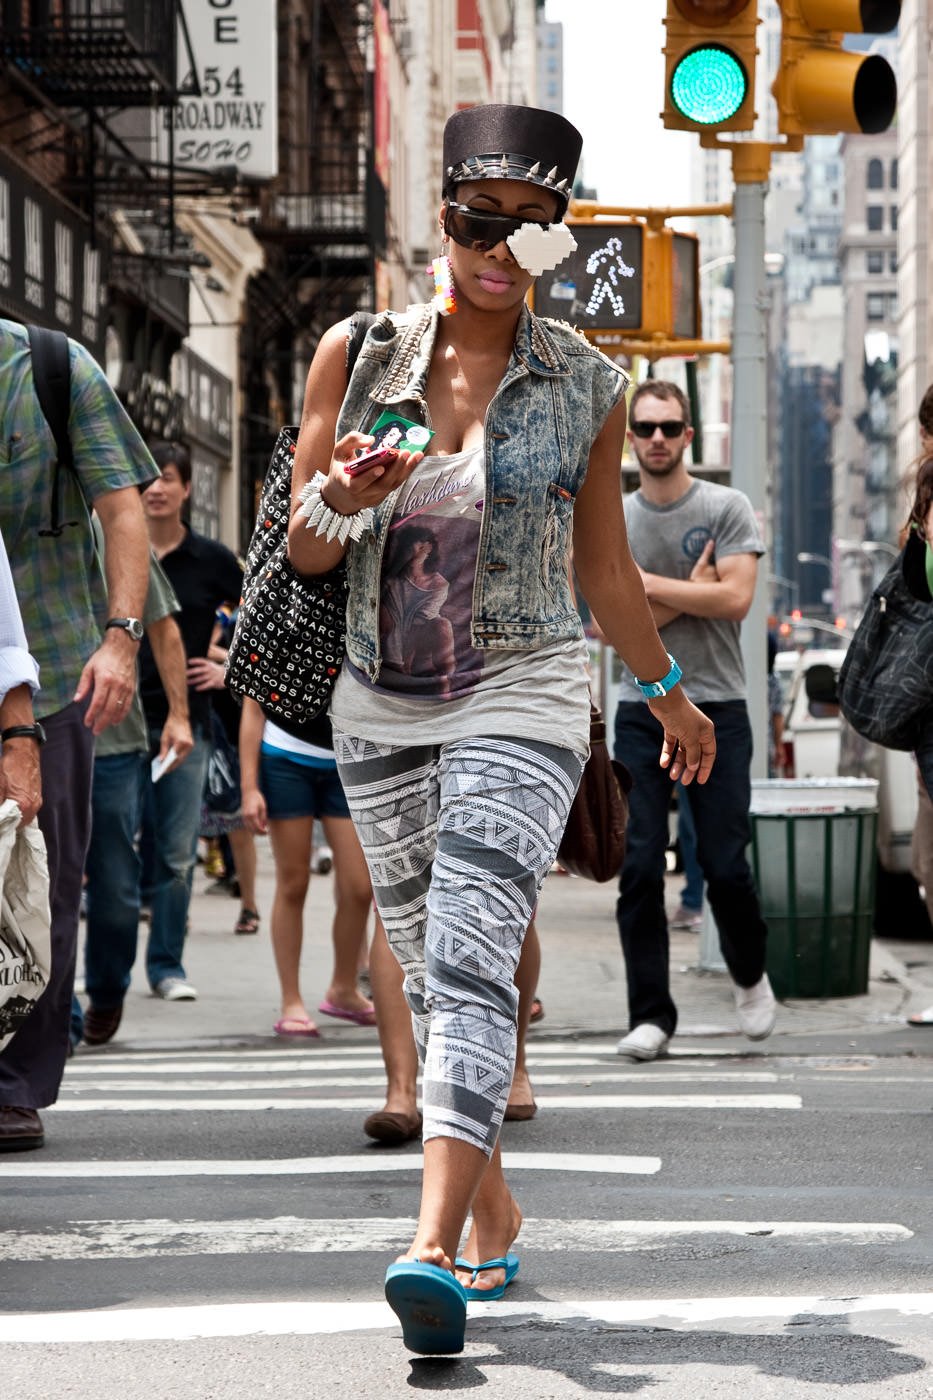 Уличная фотография: Вычурно одетая женщина переходит улицу